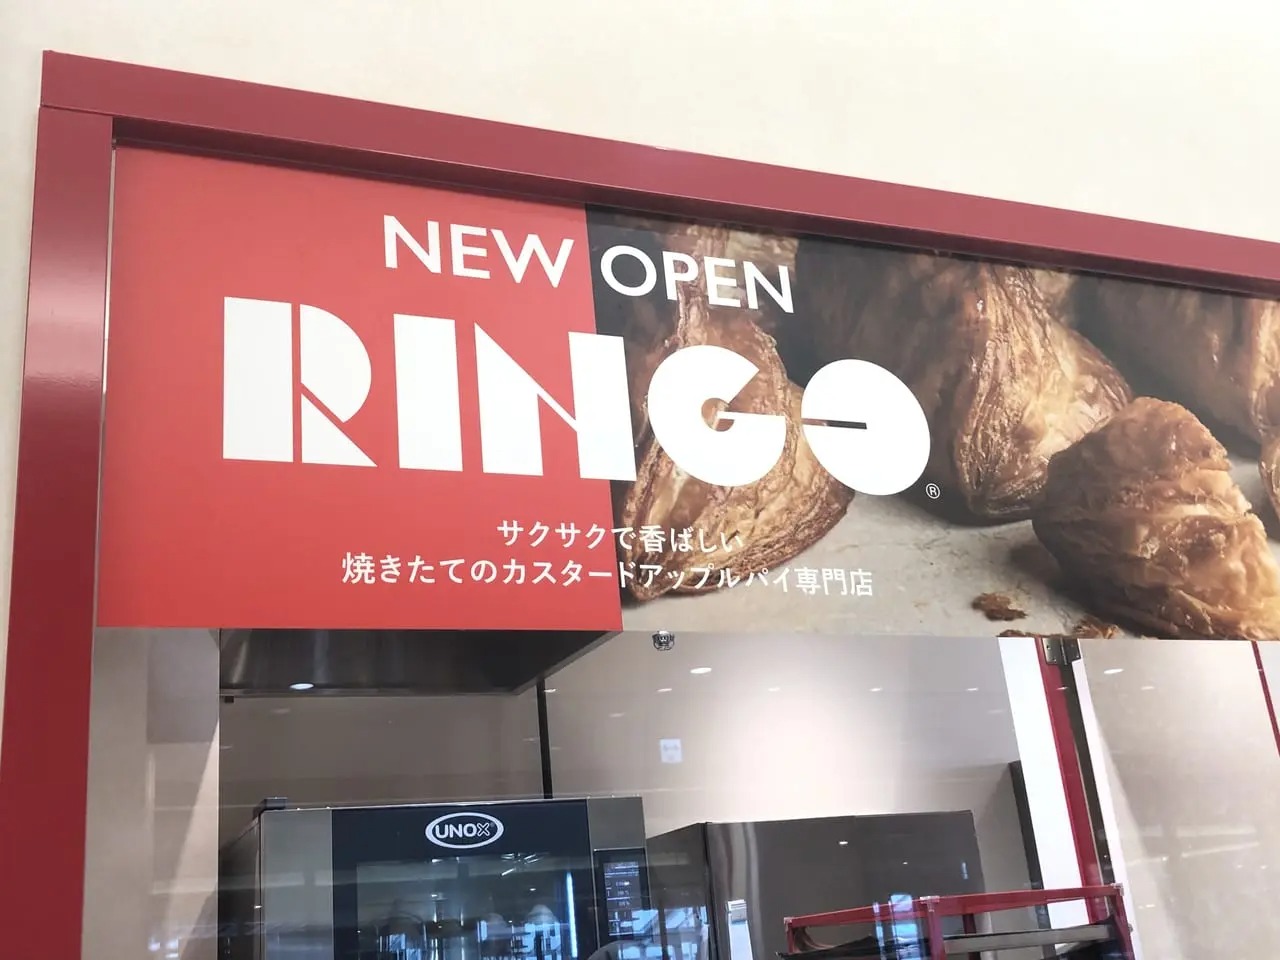 焼き立てカスタードアップルパイ専門店「RINGO」